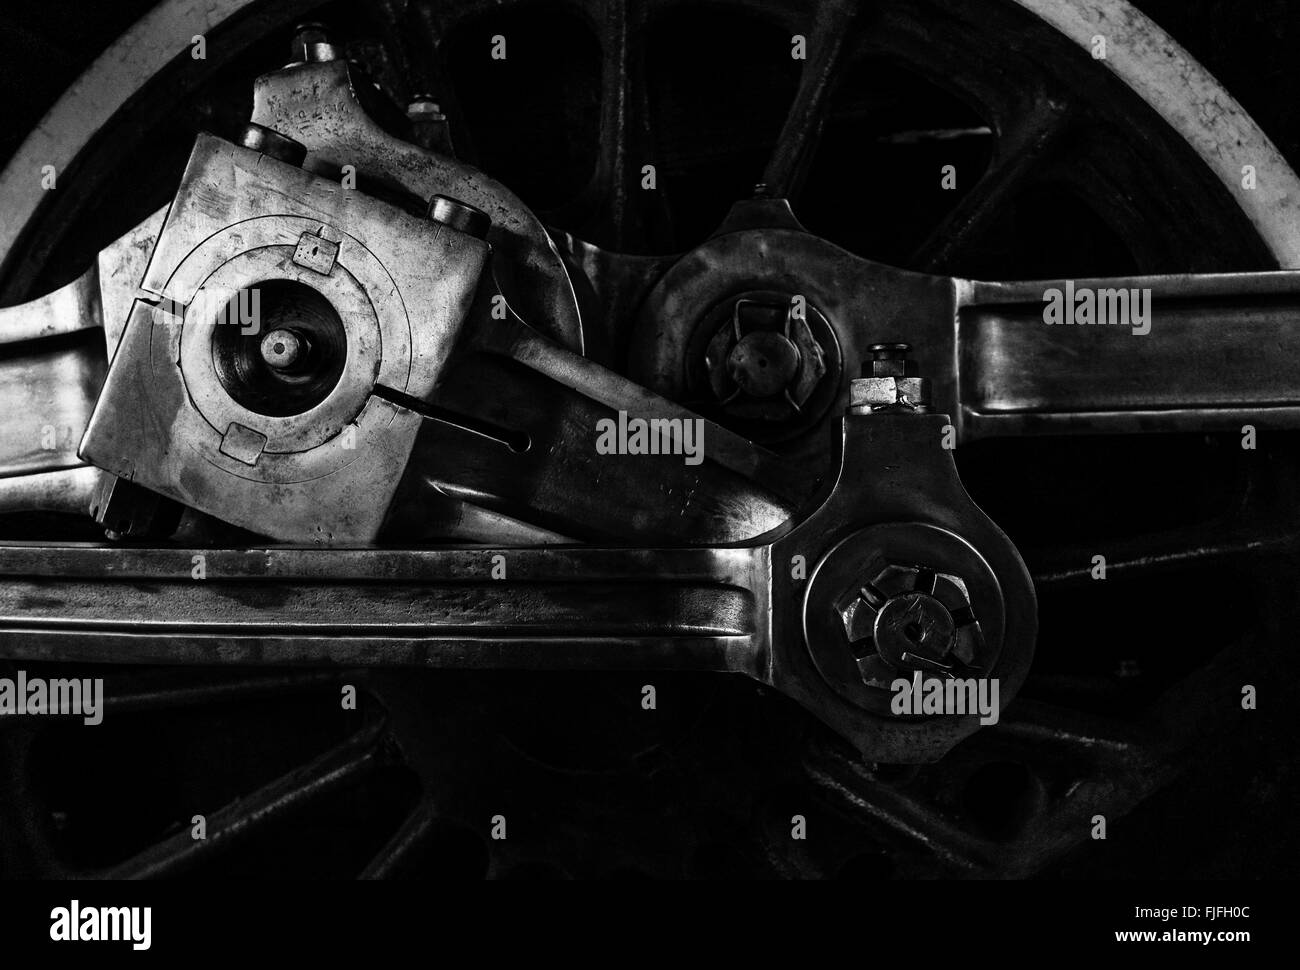 Images à l'horizontale du paysage montrant le détail d'une roue d'entraînement de locomotives vintage et des engrenages de la musée des sciences et de la technologie d'Ottawa Banque D'Images